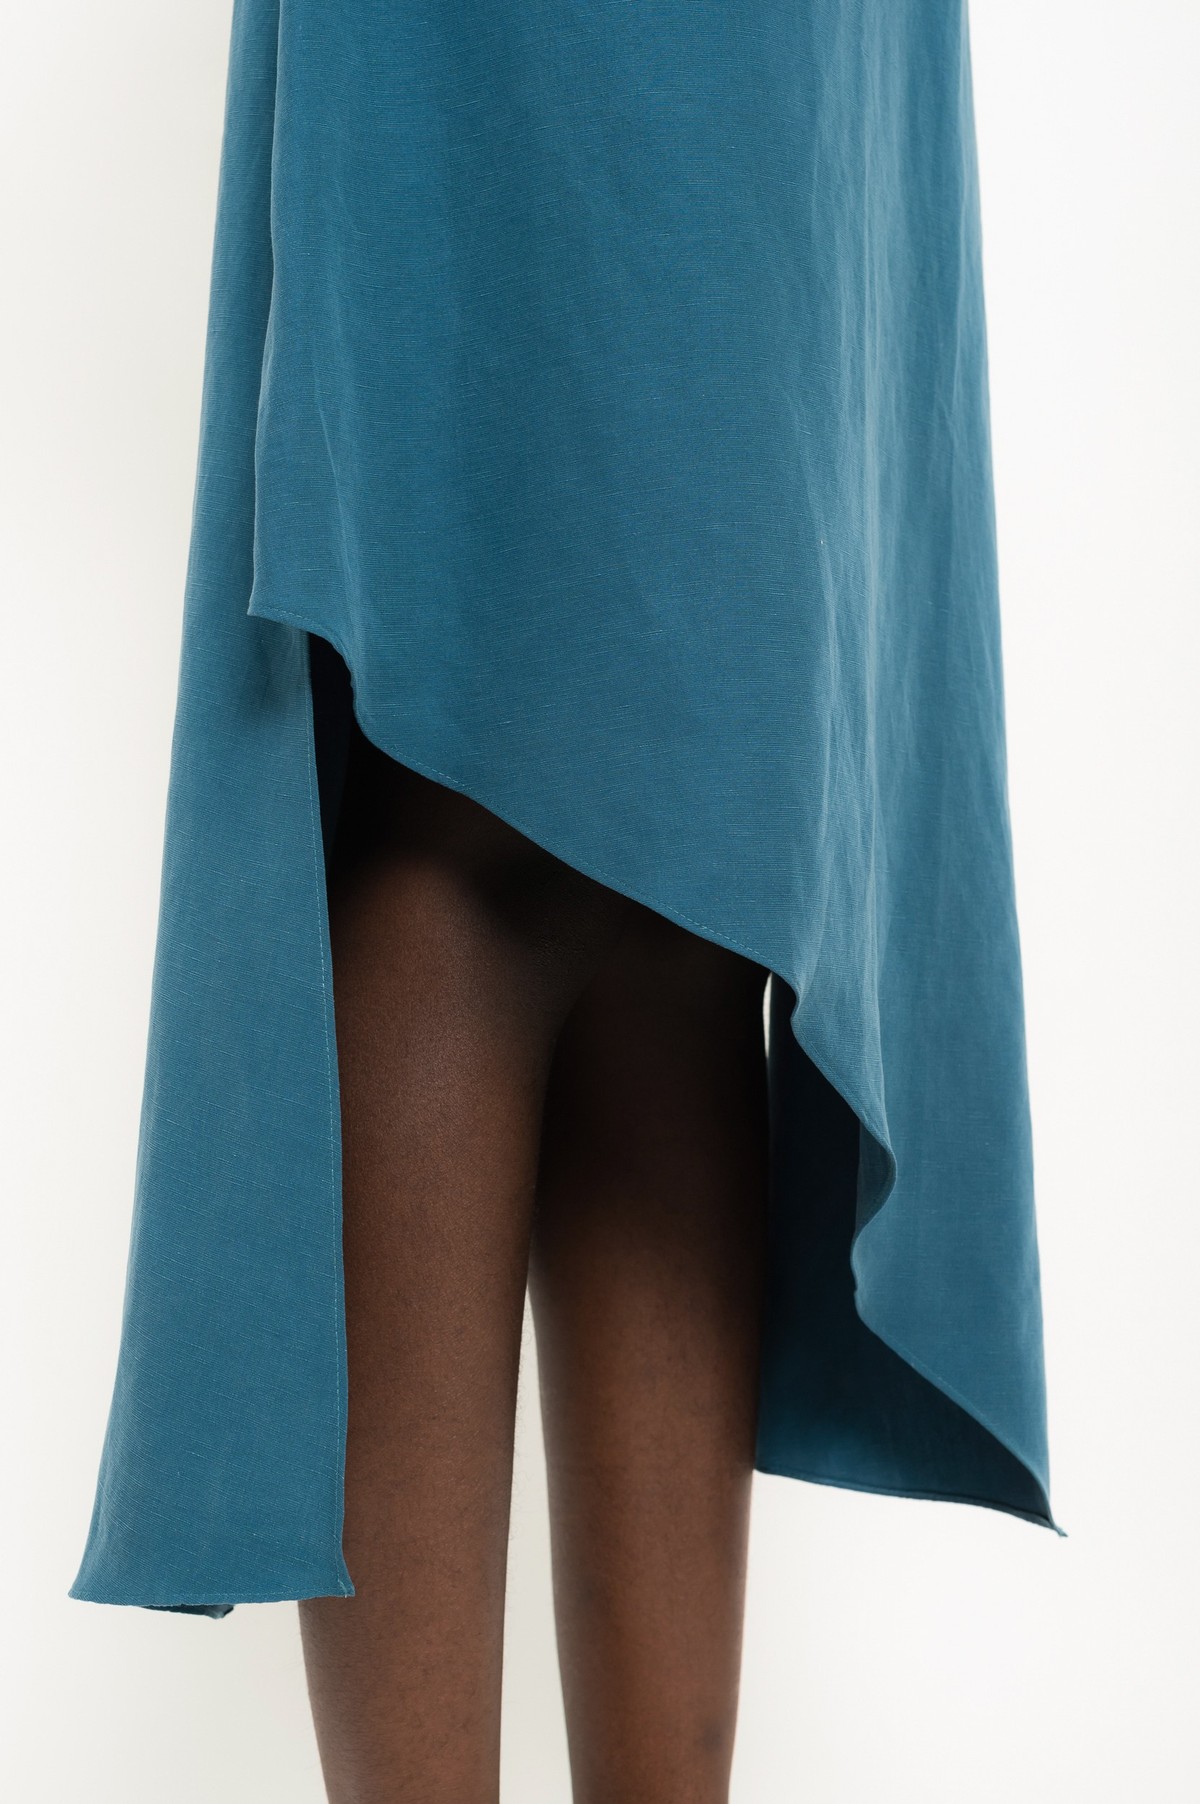 vestido assimétrico em modal e linho | modal linen asymmetric dress